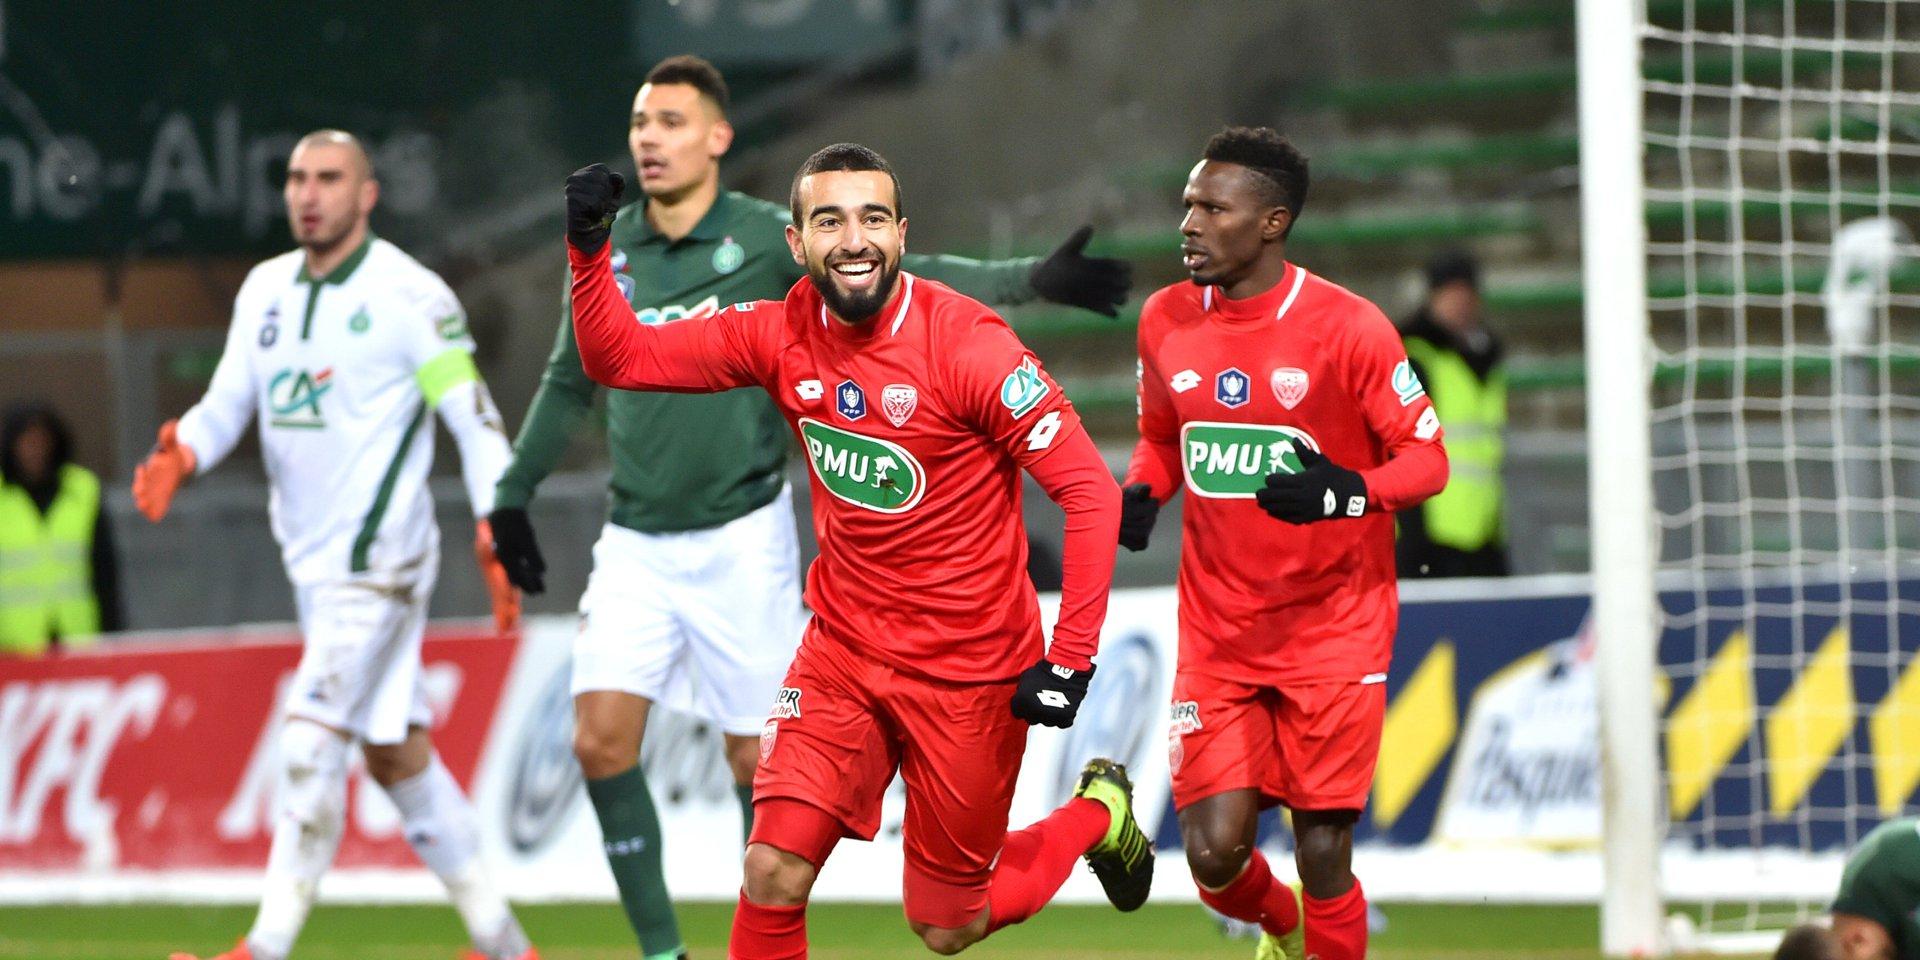 Coupe de France : Naïm Sliti élimine Khazri et Saint-Etienne